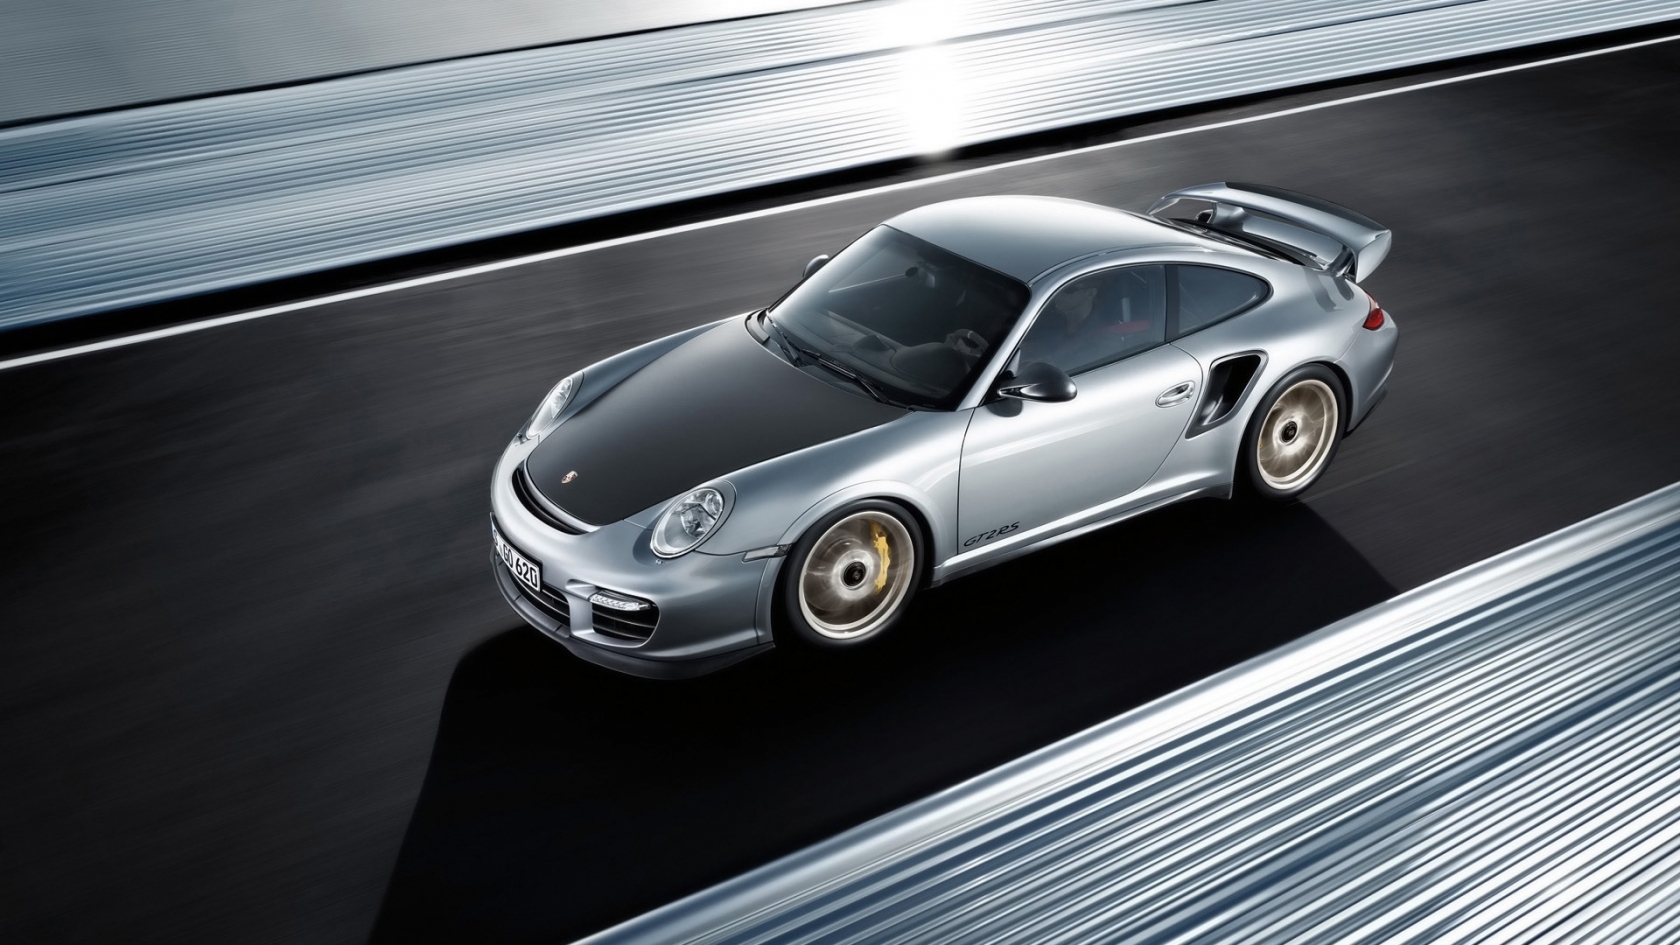 Porsche 911 GT2 RS 2011 for 1680 x 945 HDTV resolution